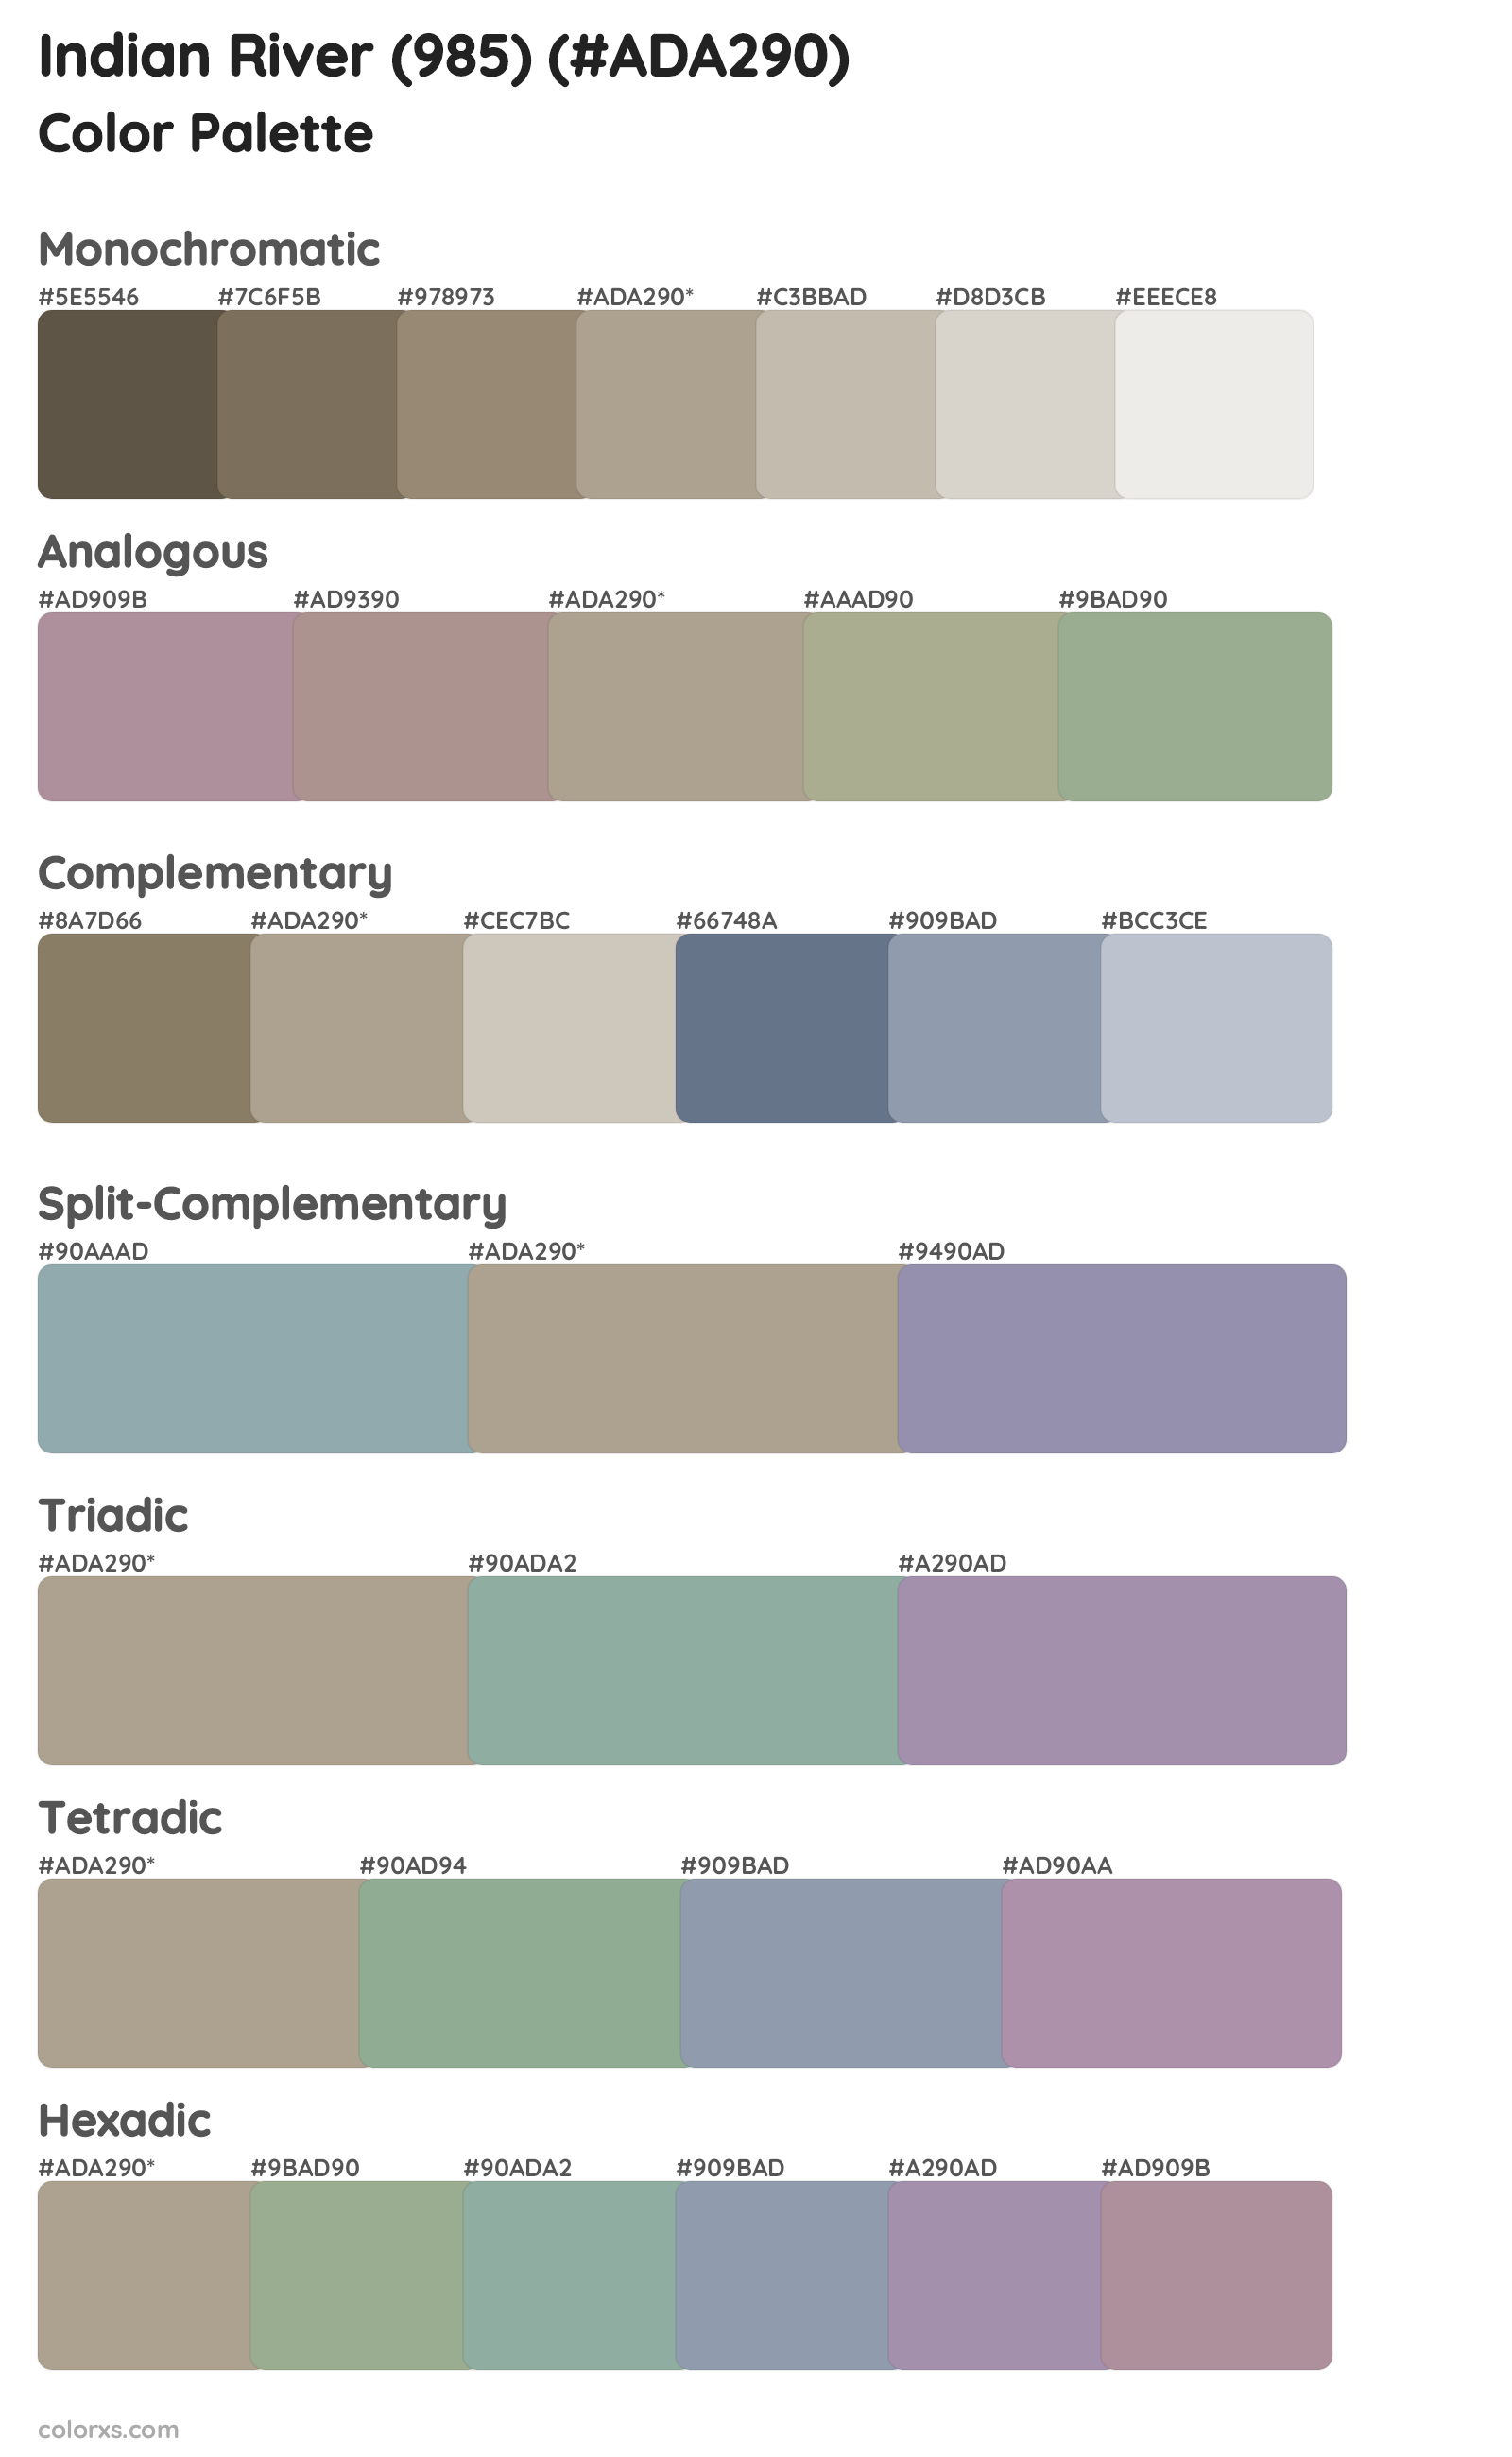 Indian River (985) Color Scheme Palettes